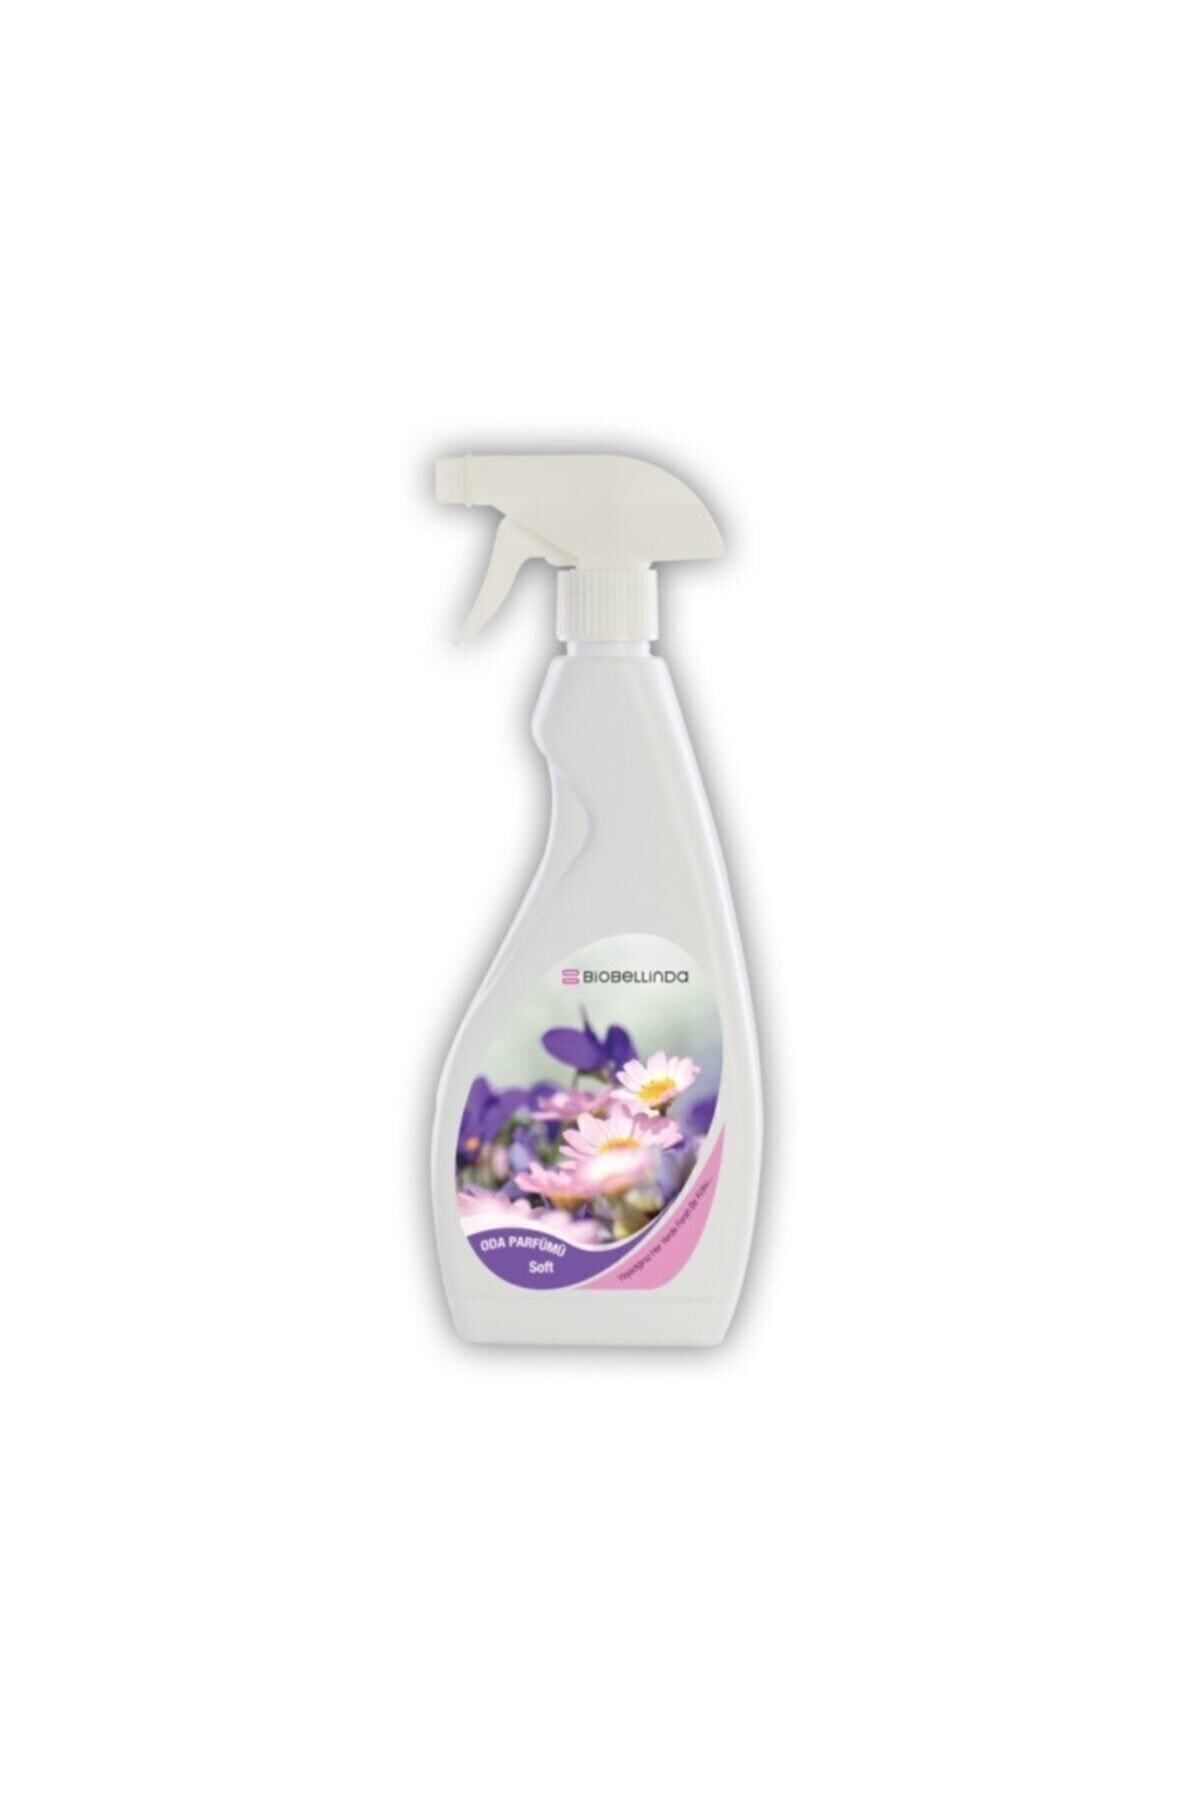 BioBellinda Oda Parfümü- Soft Tamamlayıcı Ürün -bl 13- 400 Ml